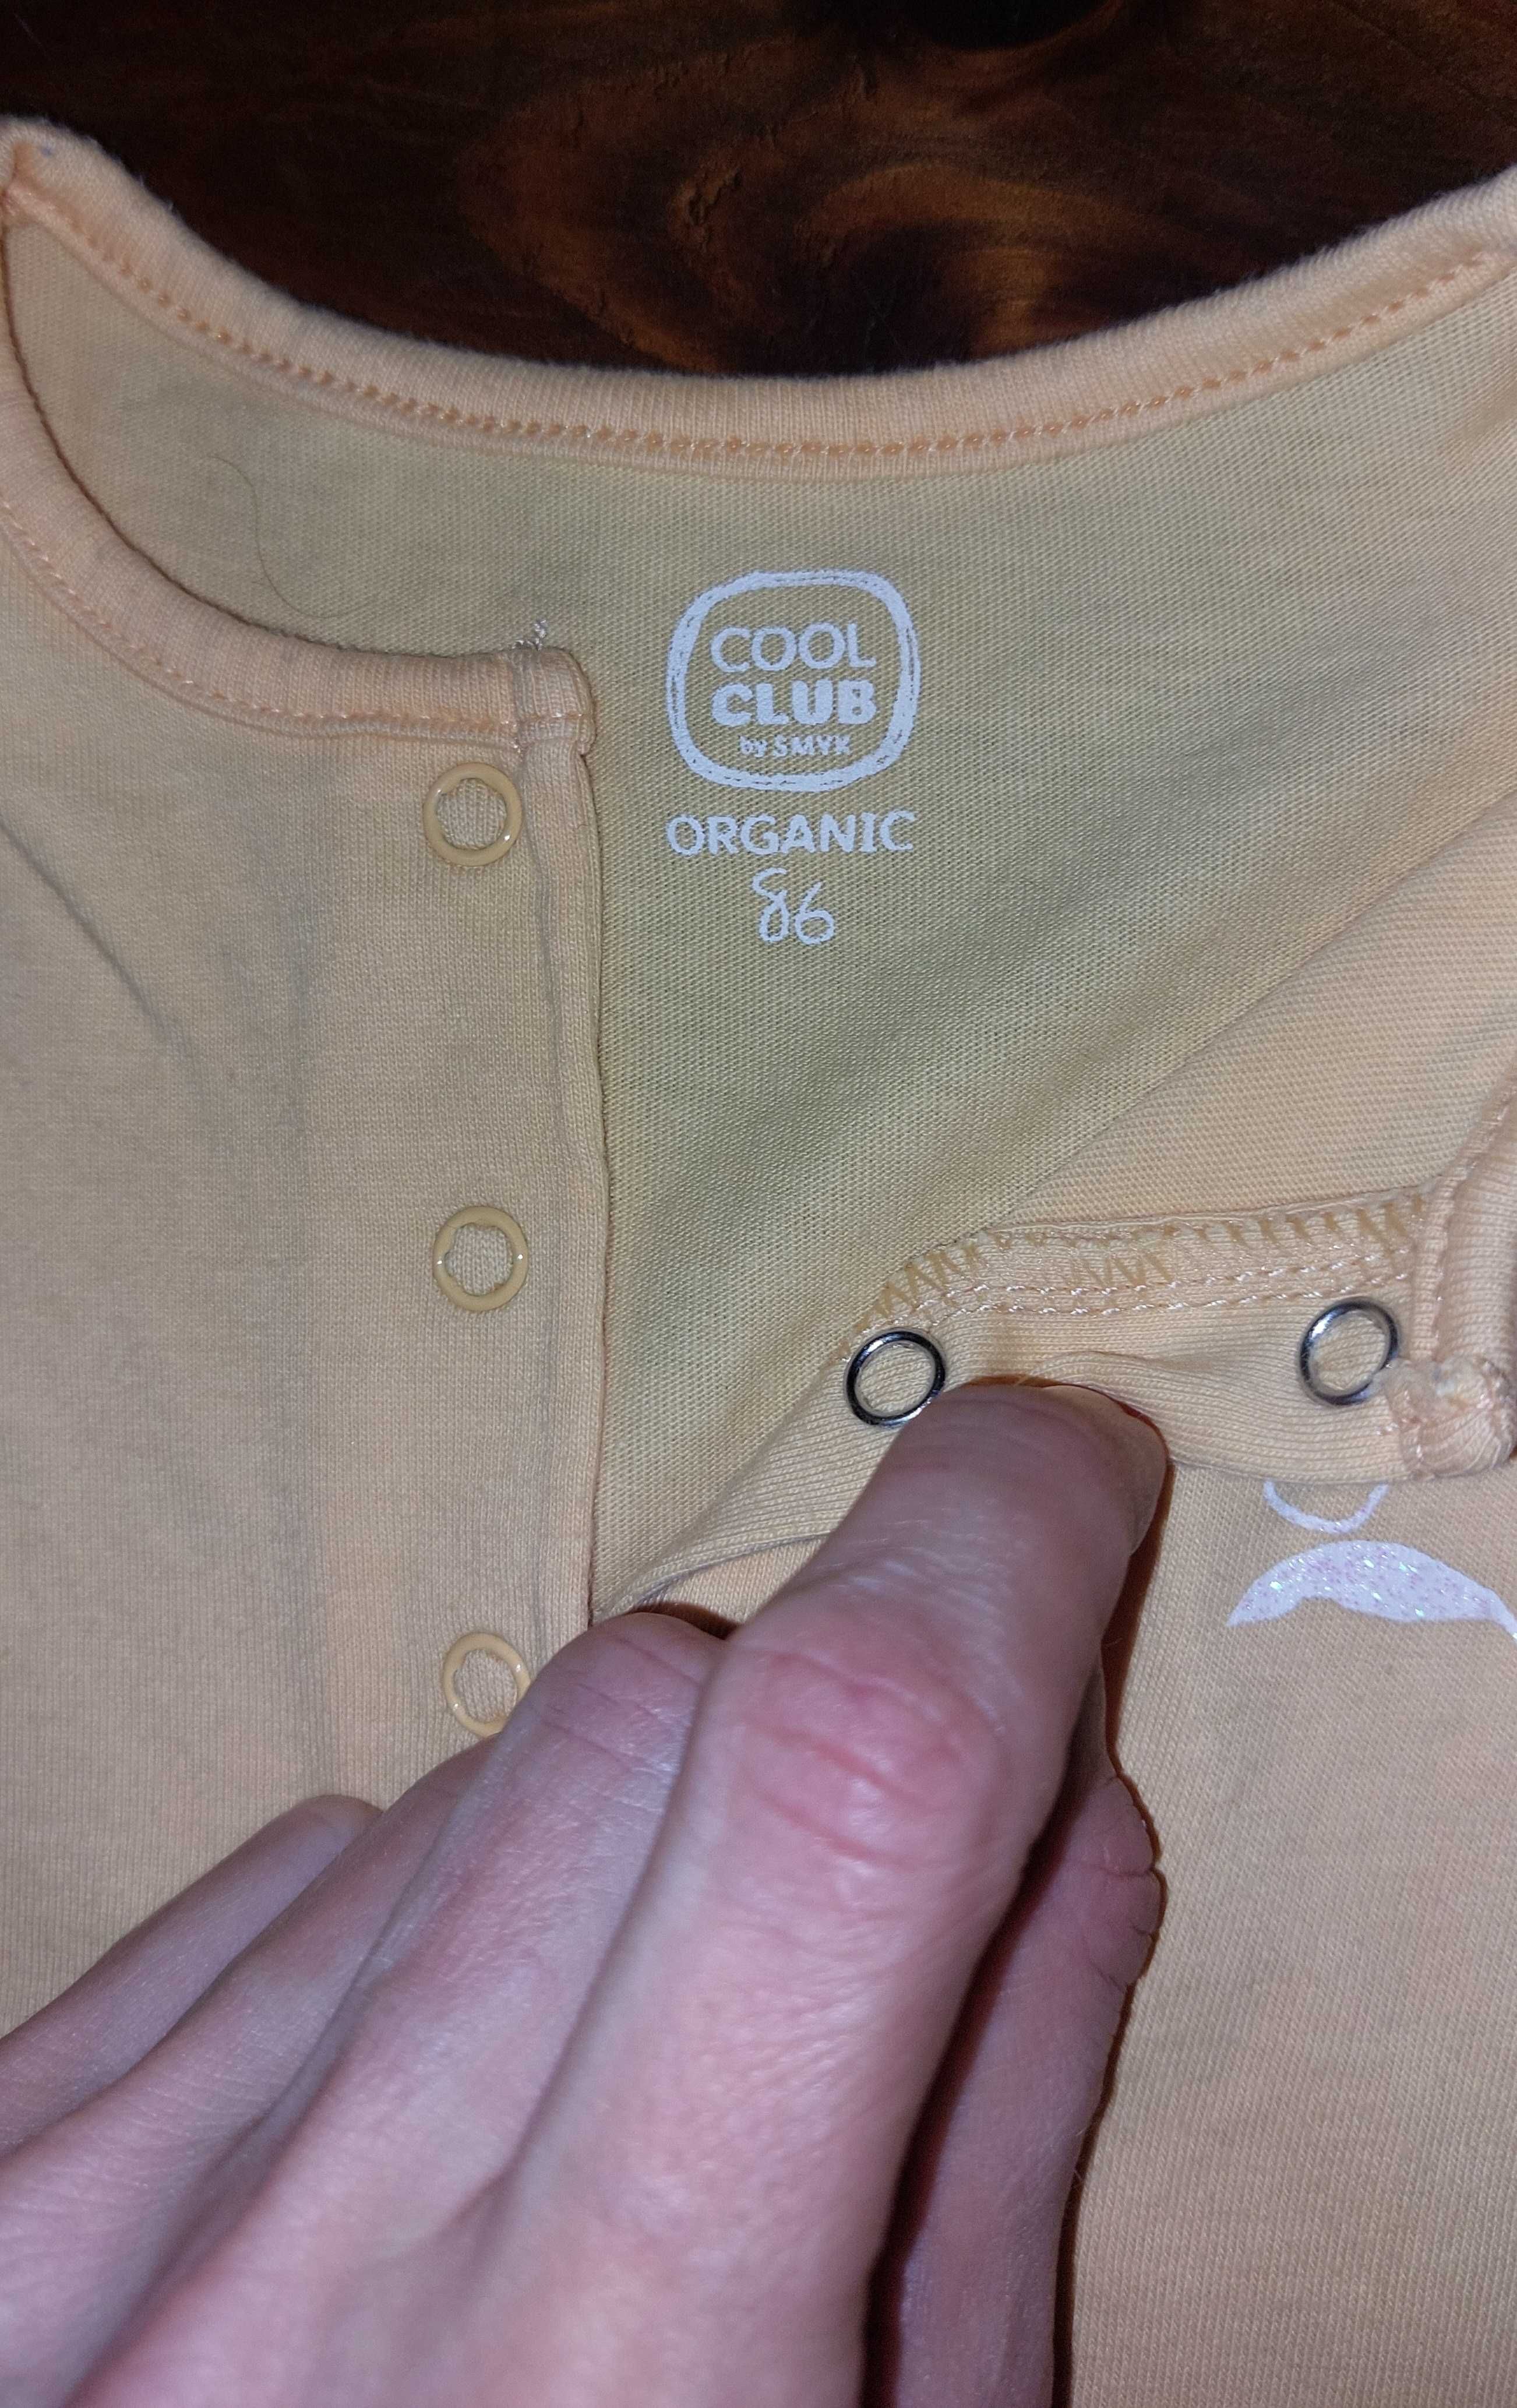 Cool Club, Rampers dziewczęcy, bawełna organiczna, 3-pak, rozmiar 86